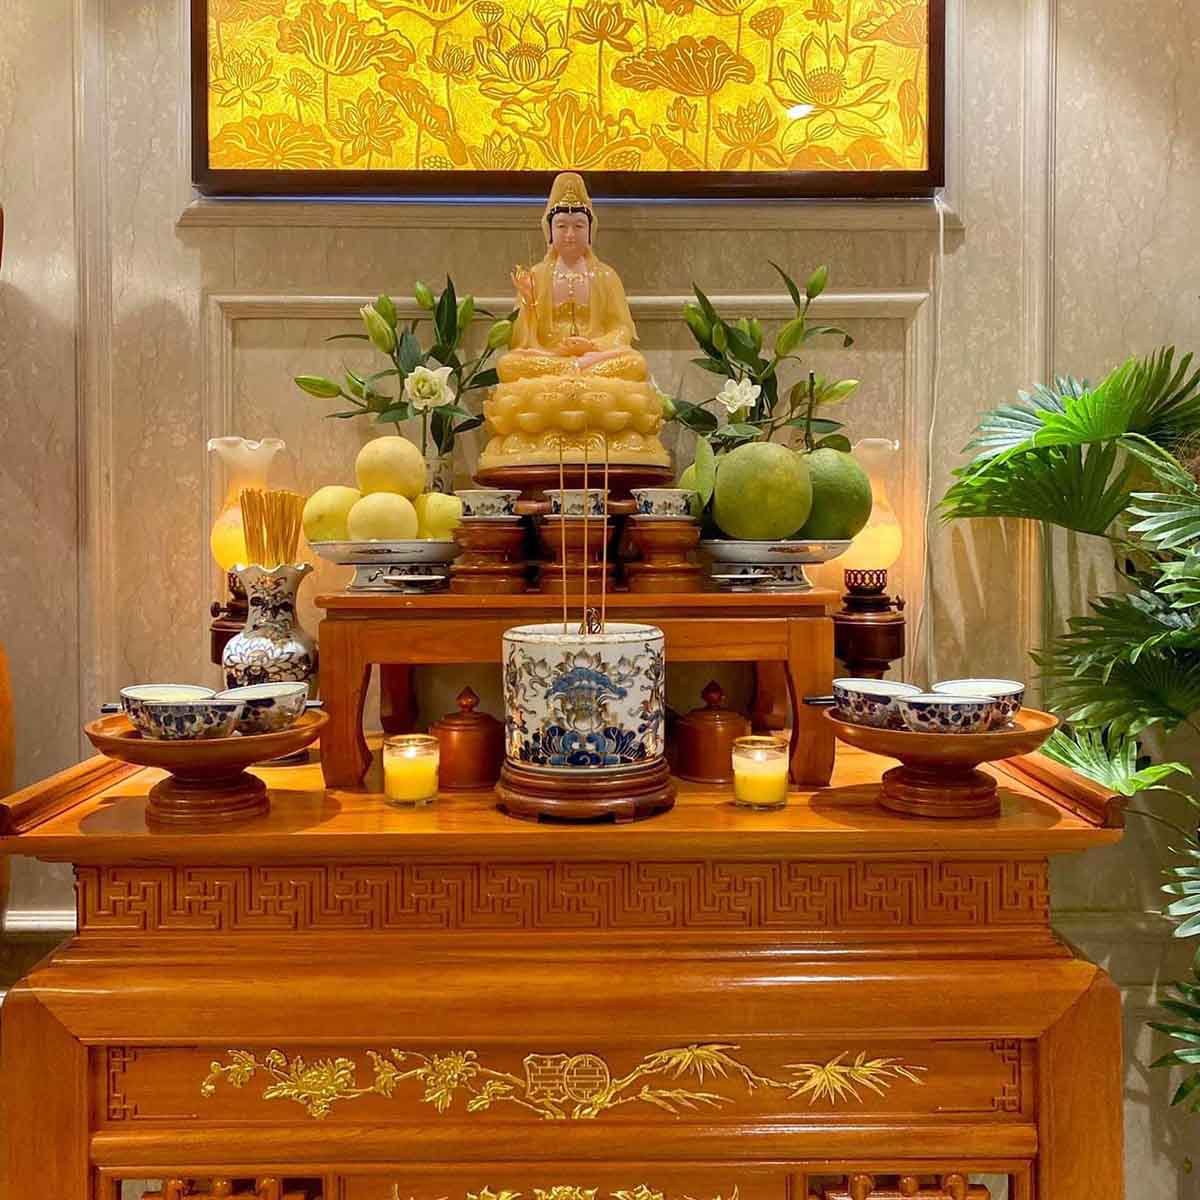 Phật Quan Thế Âm Bồ Tát ngồi tòa sen. Nguồn: FB Hà Phạm